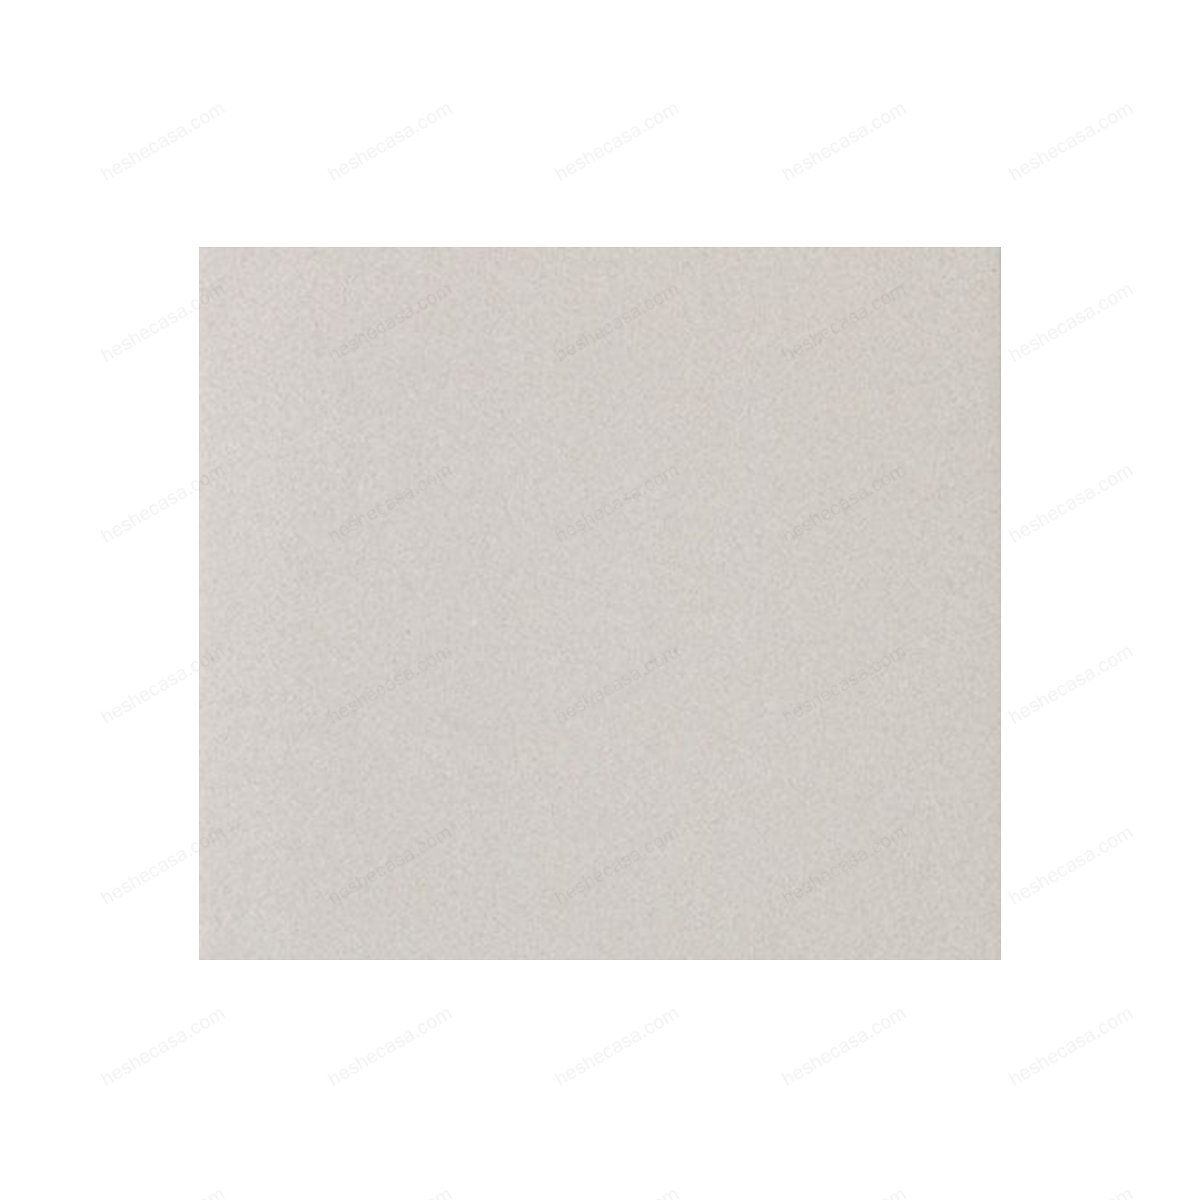 Granito-1-evo瓷砖